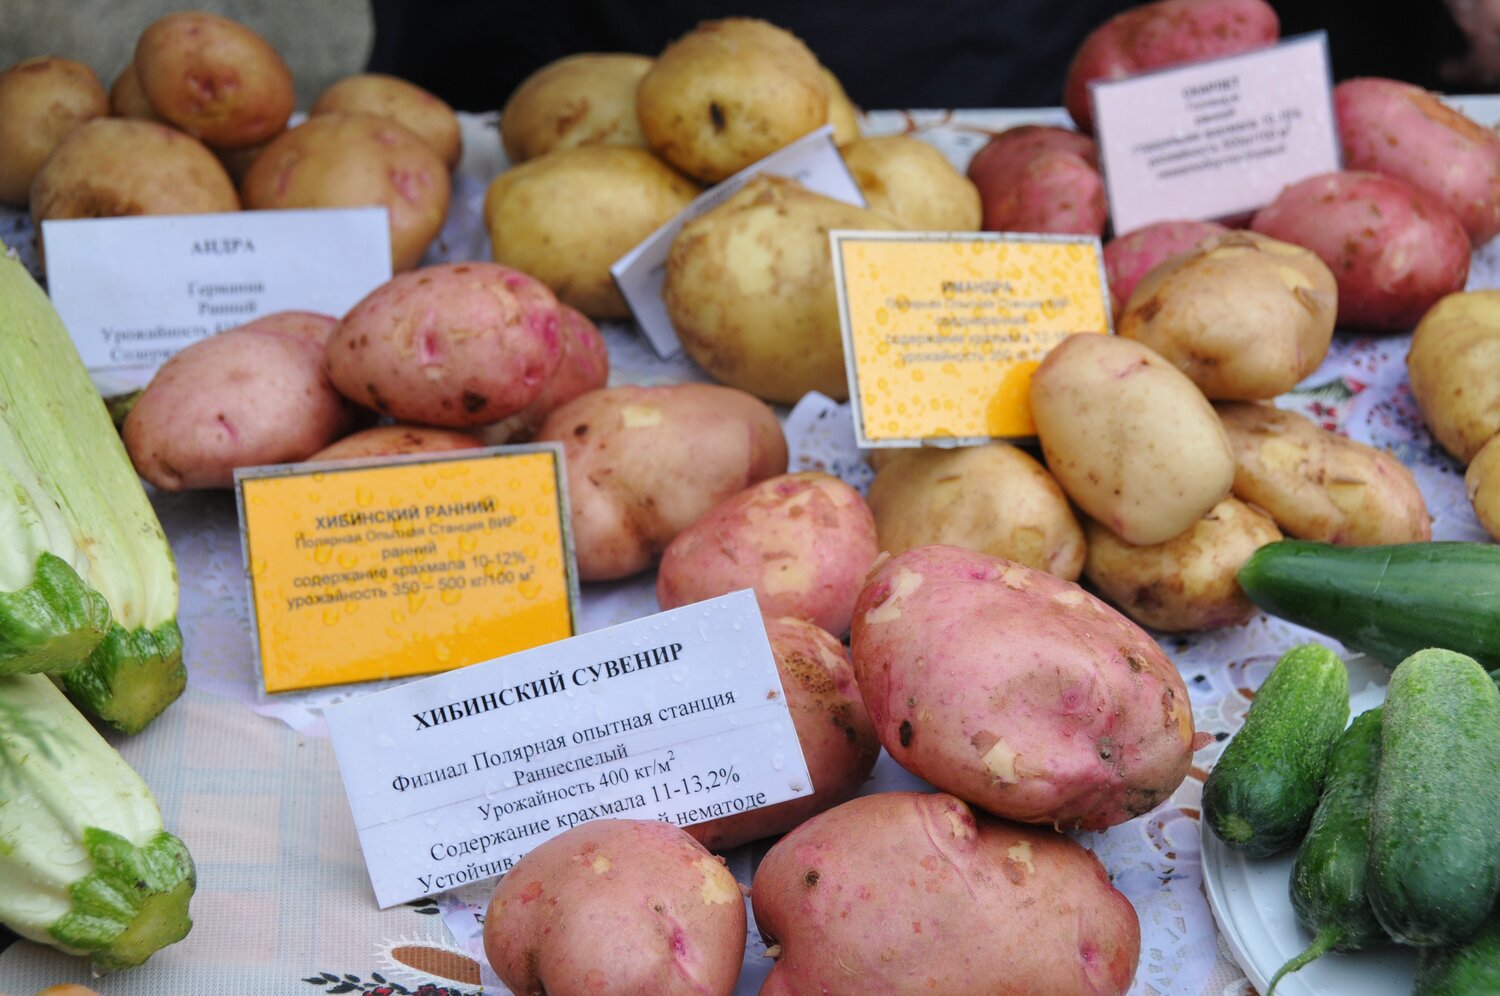 Exhibition of superior potato varieties at VIR Polar Regional Station.